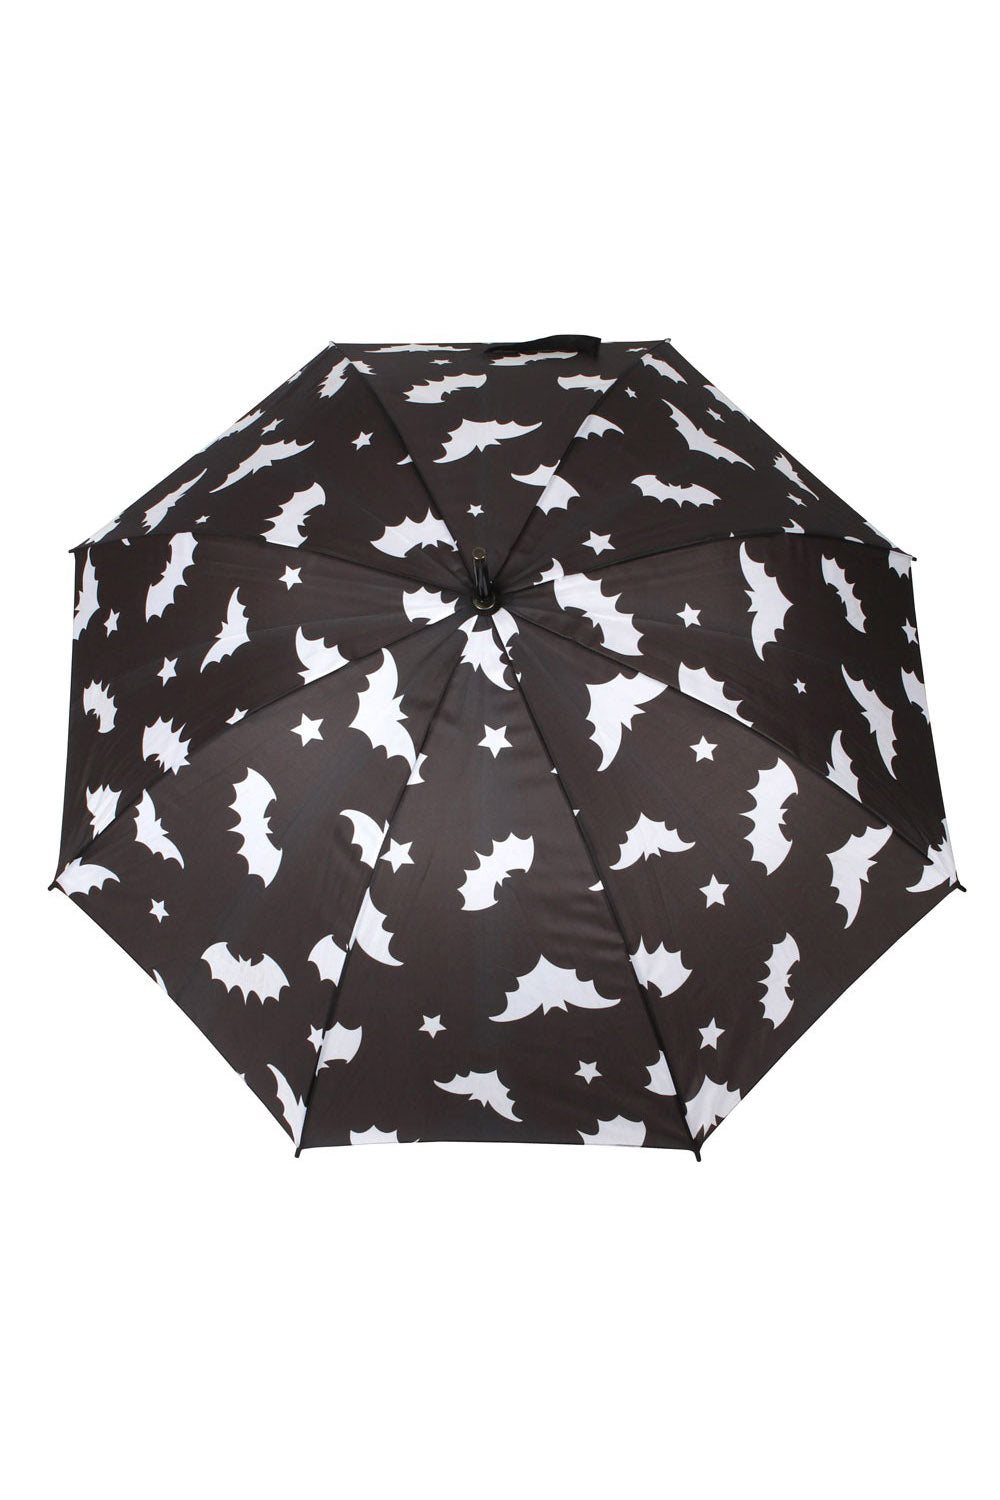 gothic bat umbrella